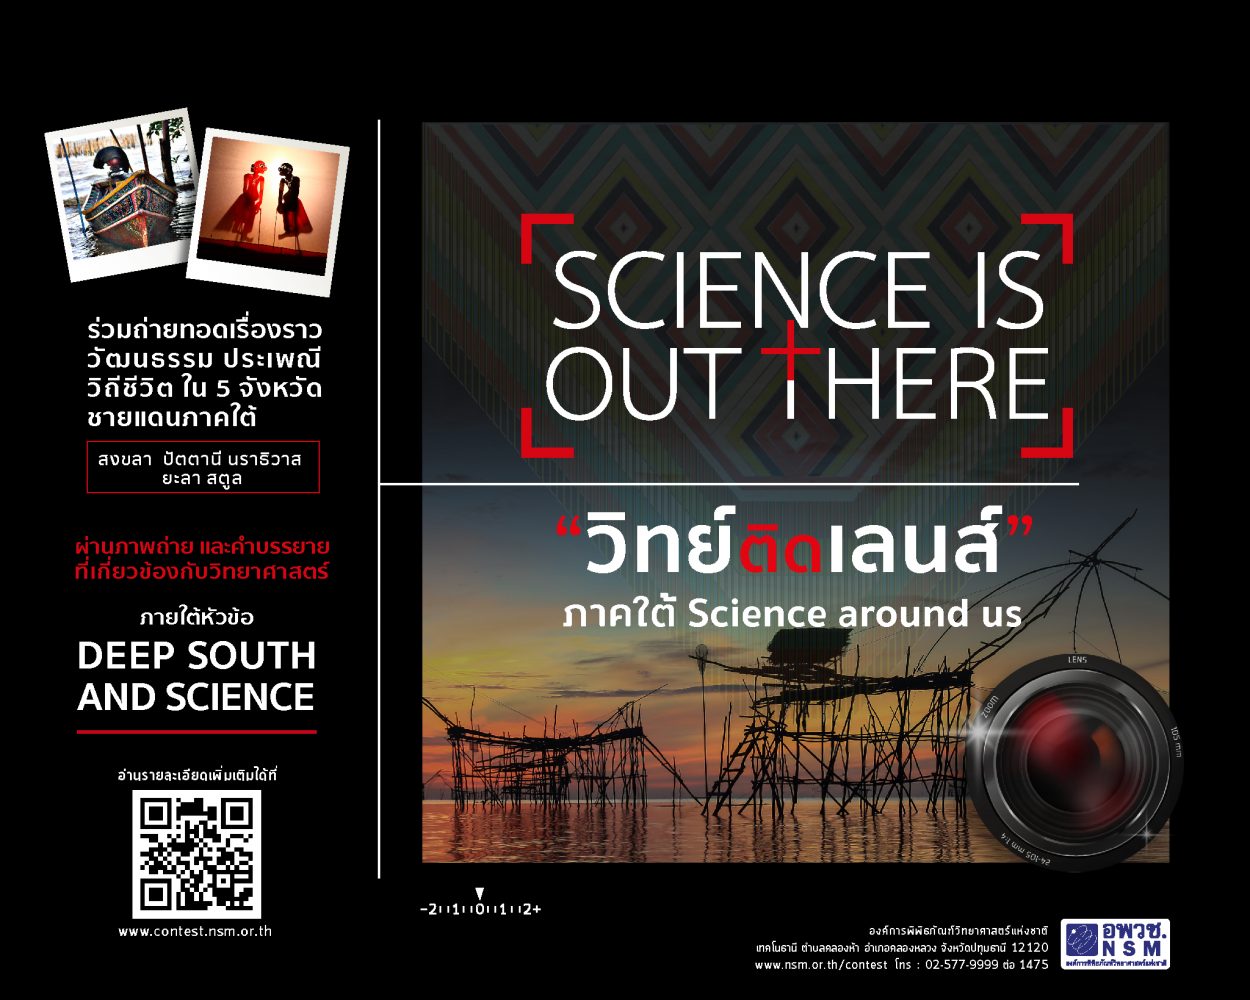 อพวช. ชวน 5 จังหวัดชายแดนใต้ส่งภาพถ่ายสะท้อนประเพณี วัฒนธรรมท้องถิ่น ประกวด วิทย์ติดเลนส์ หัวข้อ Deep South and Science